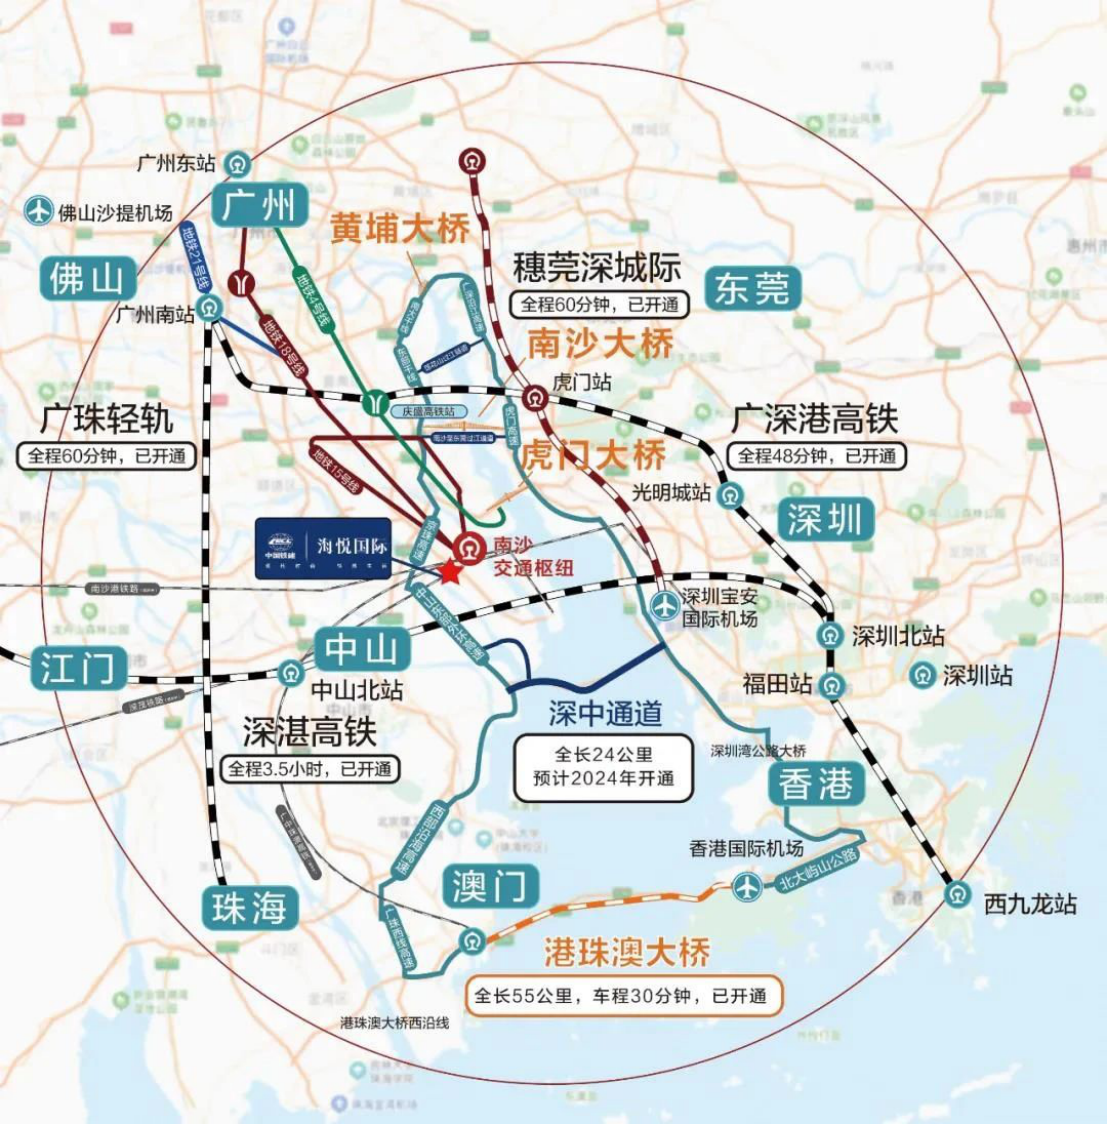 中国铁建·海悦国际落子南沙, 雄踞万顷沙枢纽核心居住板块,乘湾区